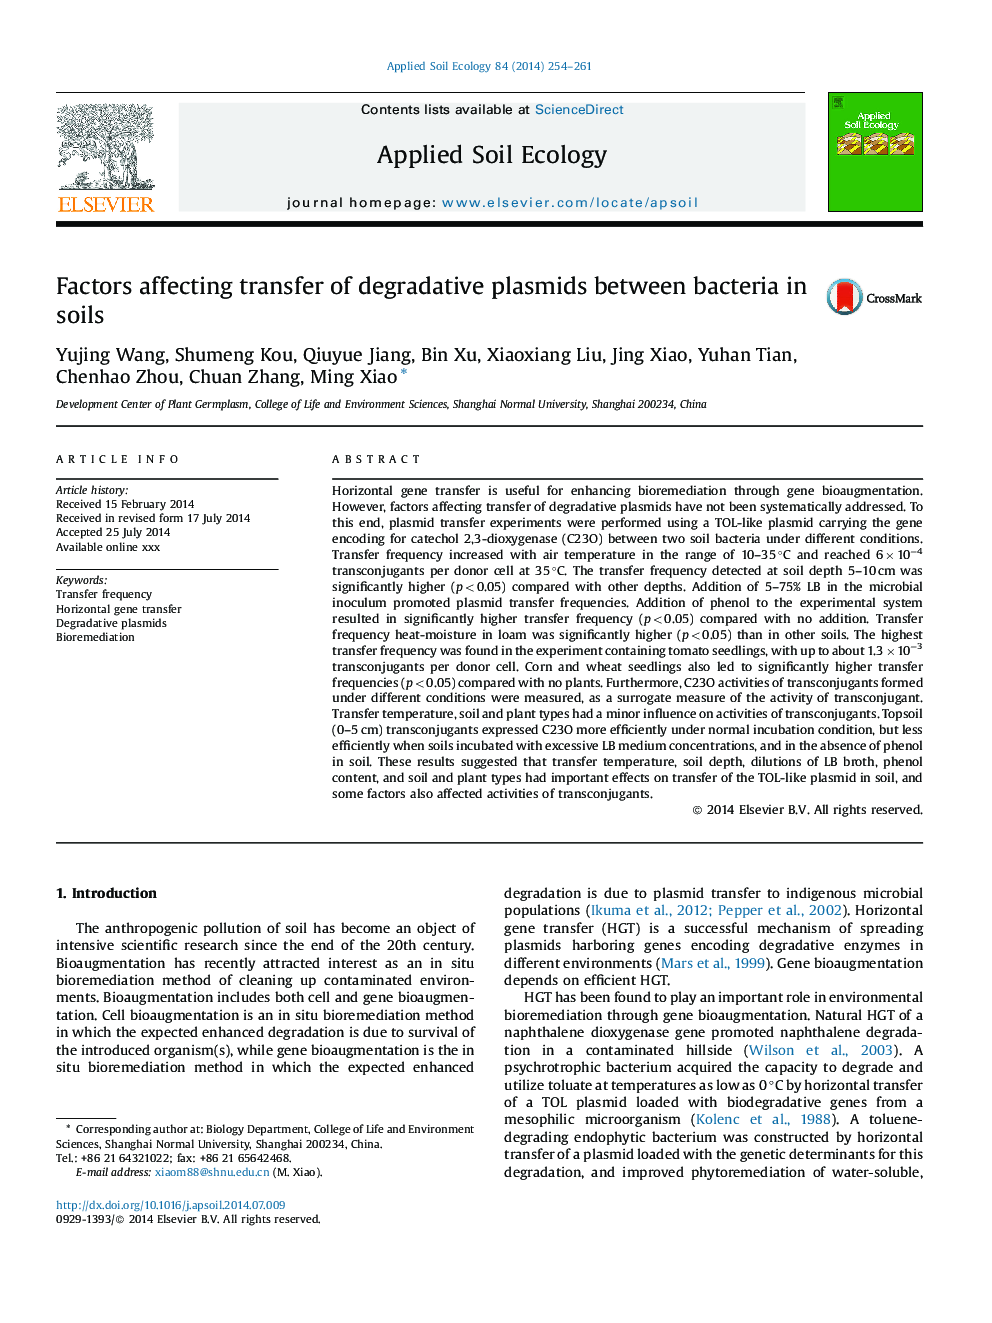 Factors affecting transfer of degradative plasmids between bacteria in soils